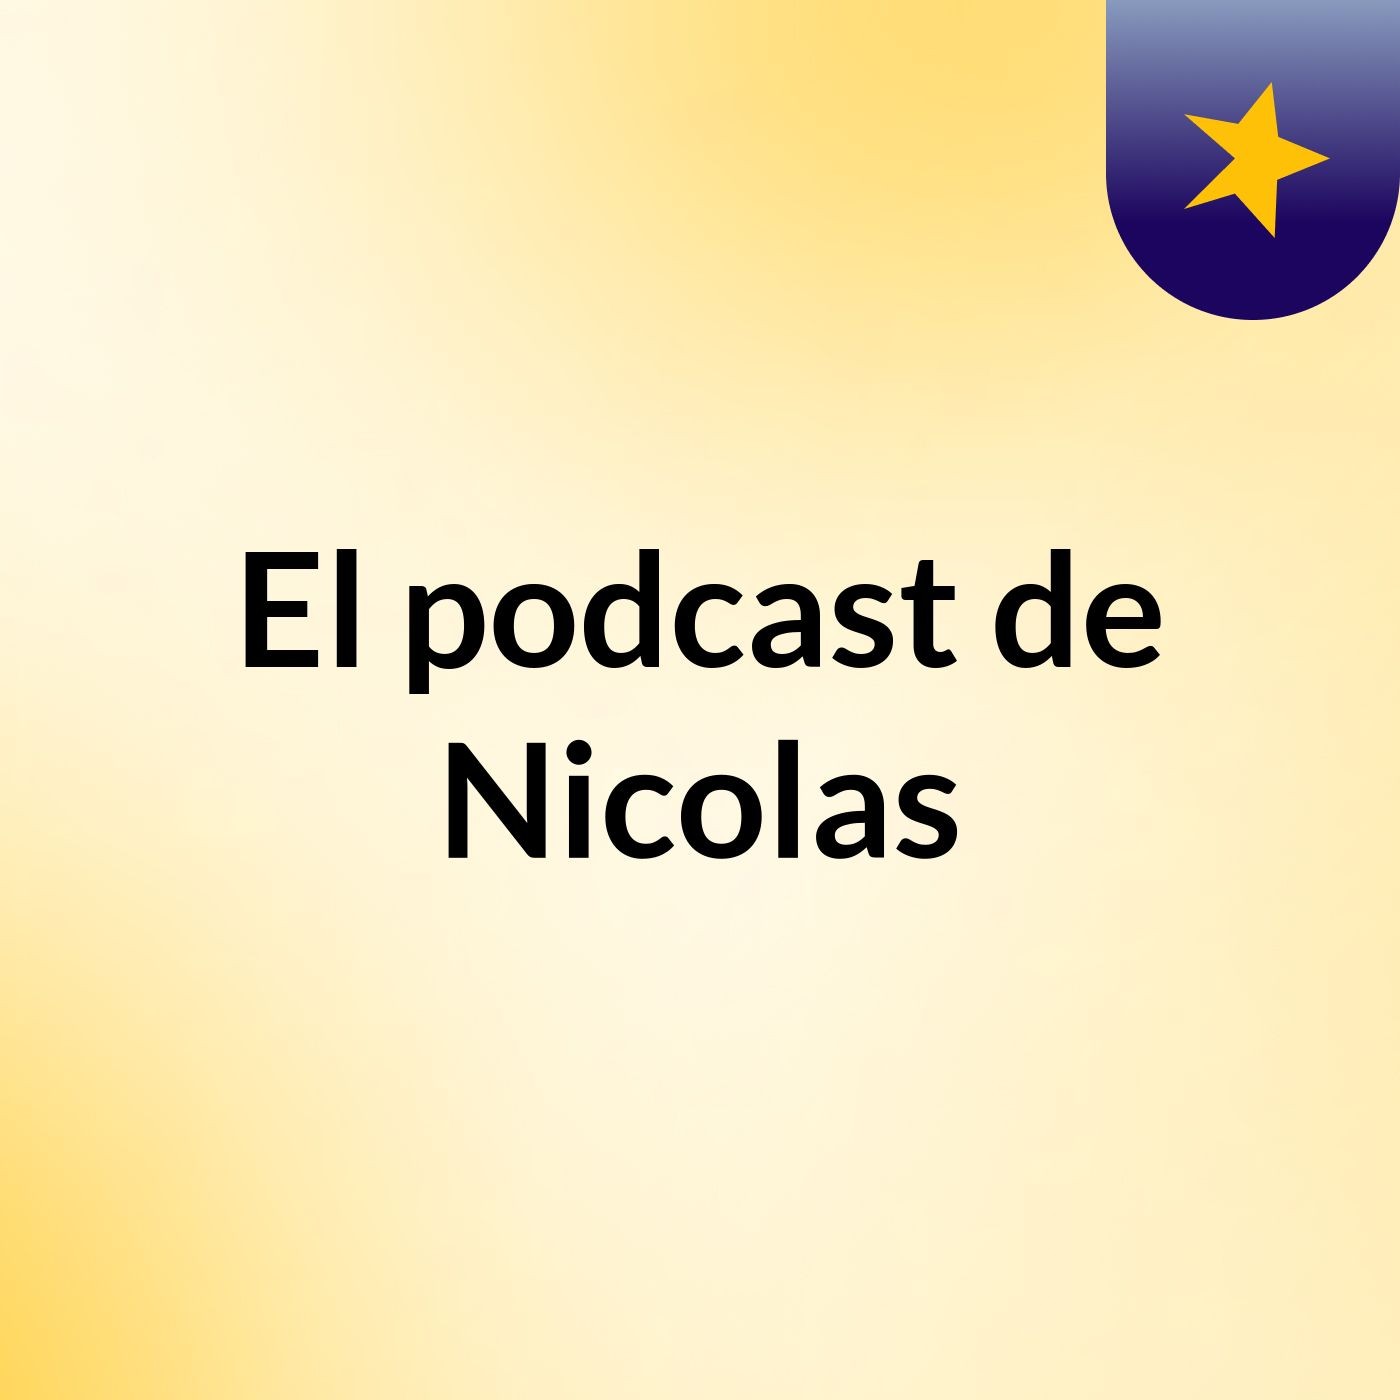 El podcast de Nicolas